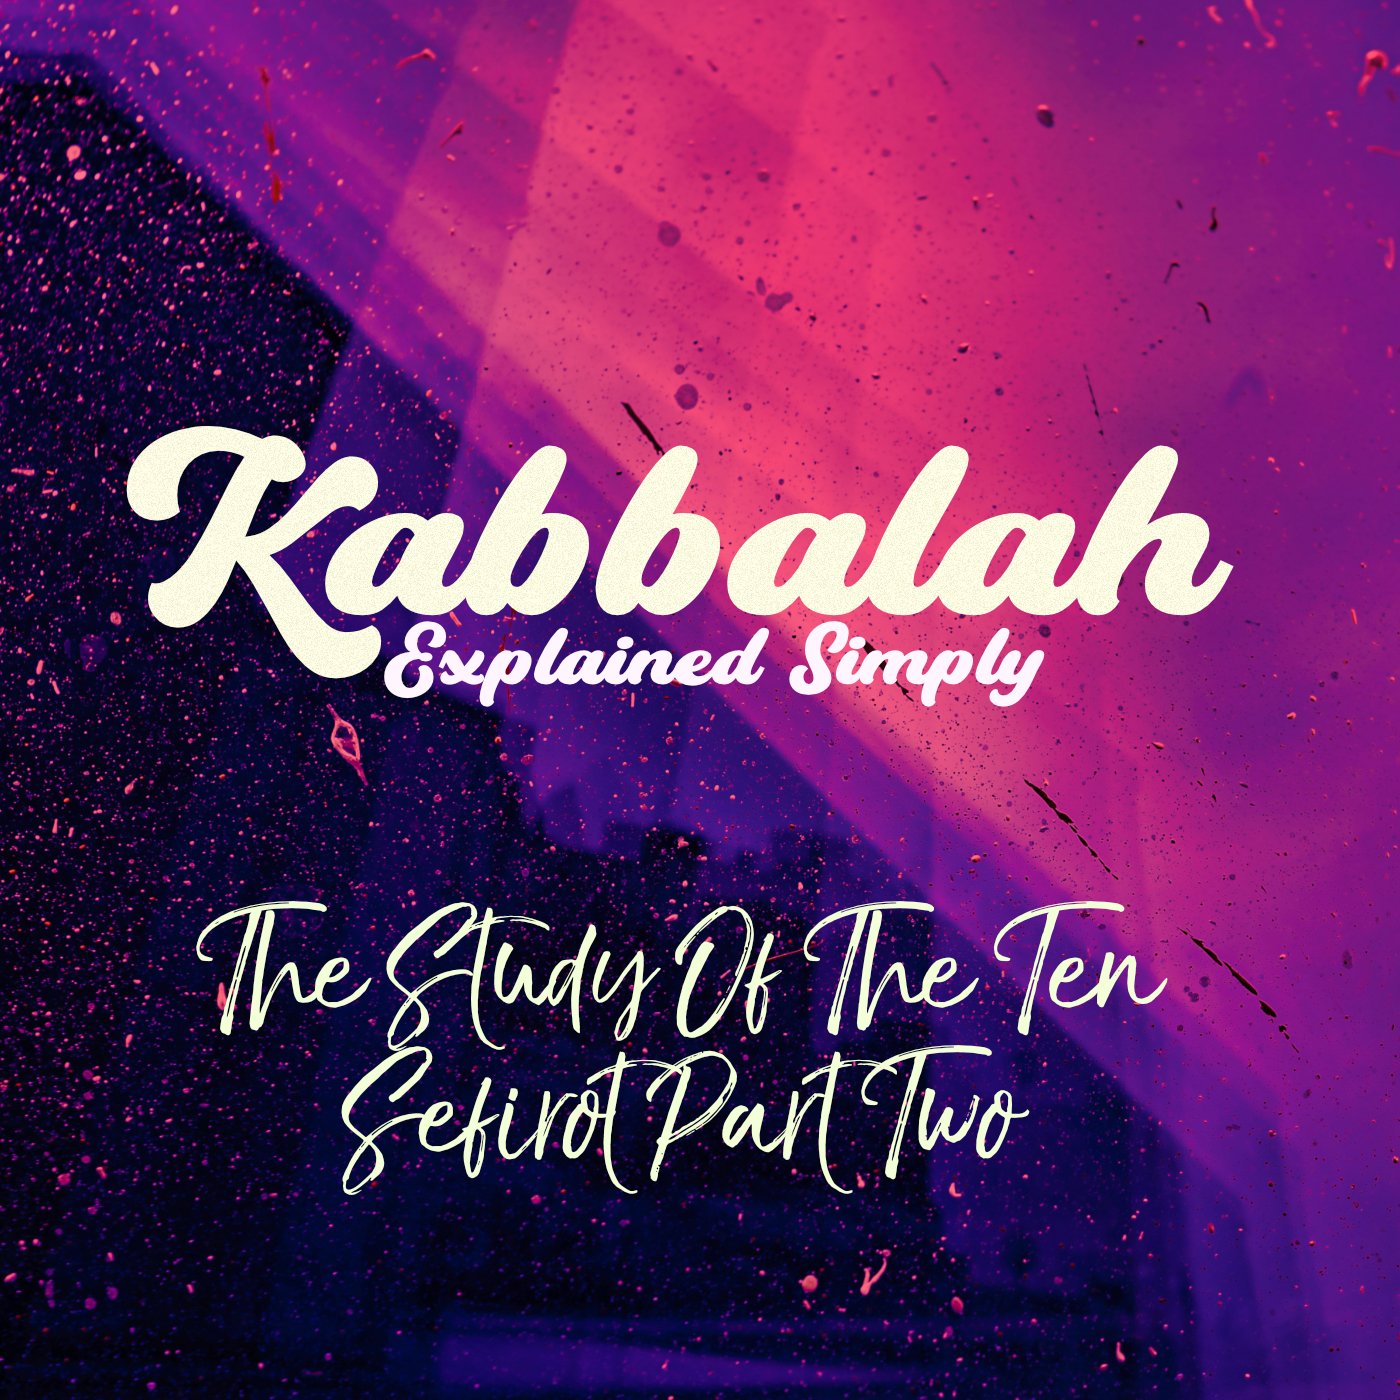 Kabbalah Explained - The Study Of The Ten Sefirot Part 2